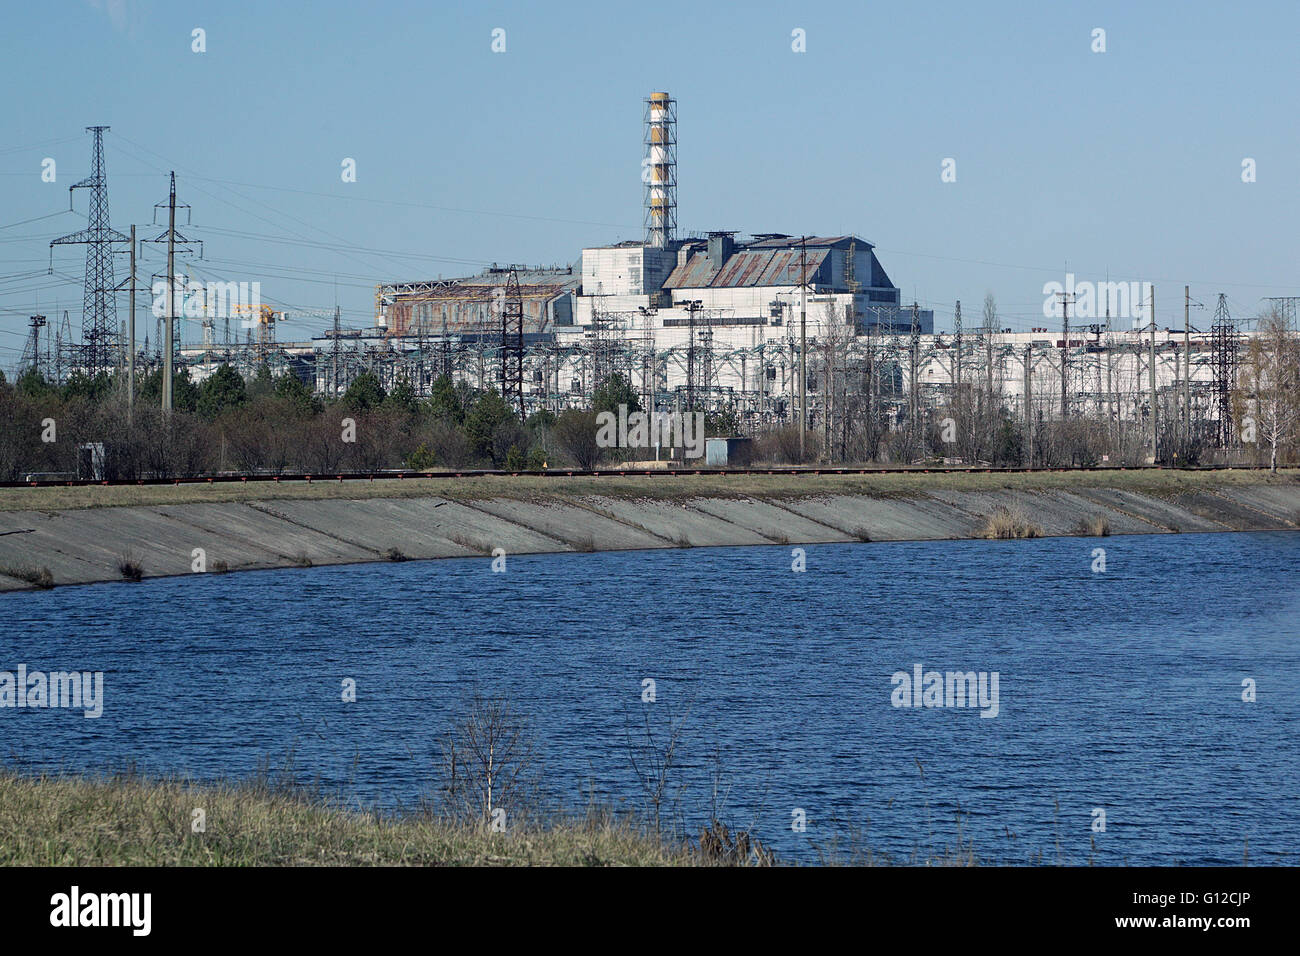 Fiume Pripjat, Chernobyl - impianto di energia nucleare - reattore distrutto 4 (sinistra) - intatto il reattore 3 (a destra). Foto Stock